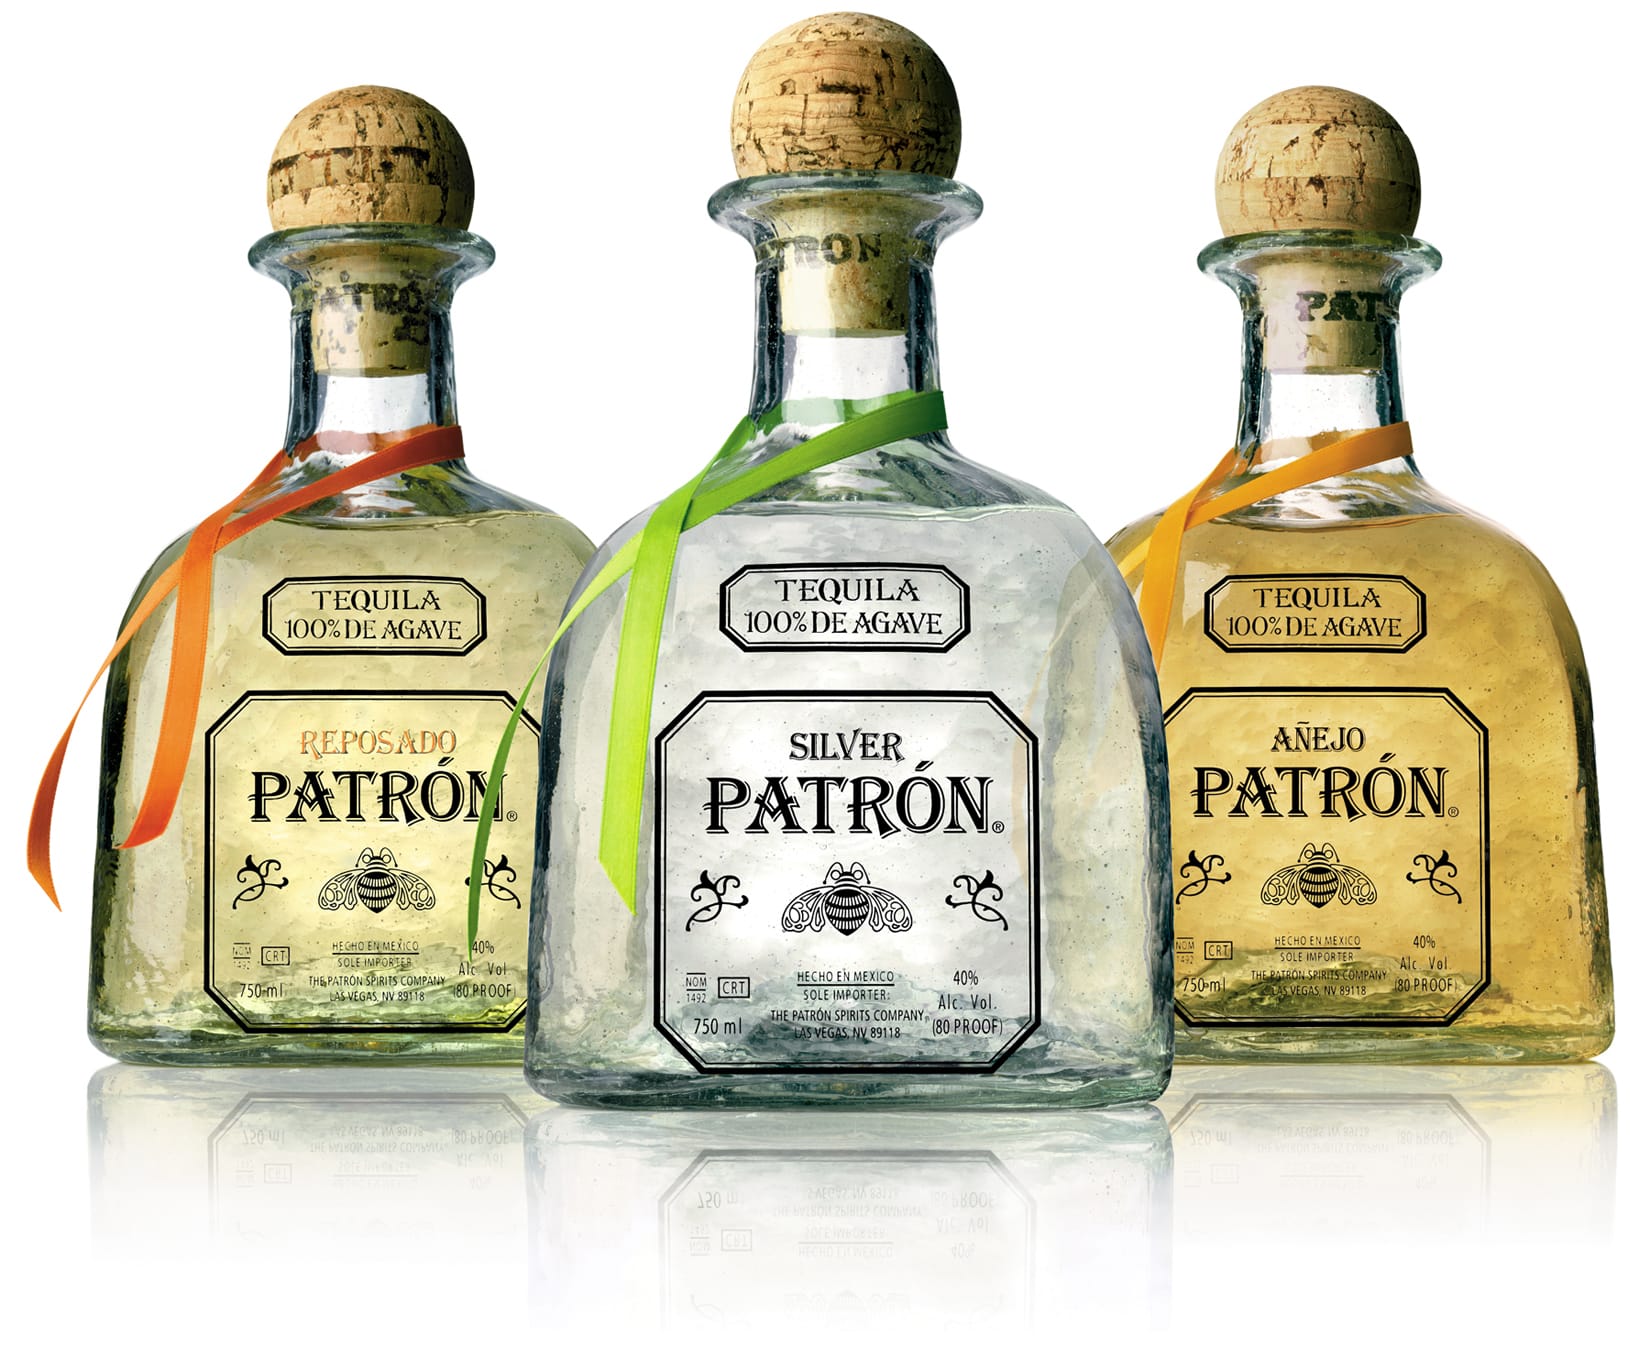 Ausschließlich beste, handverlesene Agave wird für die Produktion des Tequilas Patrón verwendet. Ihre Herkunft sind die "Los Altos" , die Hochländer in Jalisco. Der zwölf Monate im Eichenfass gelagerte Anejo ist besonders mild.